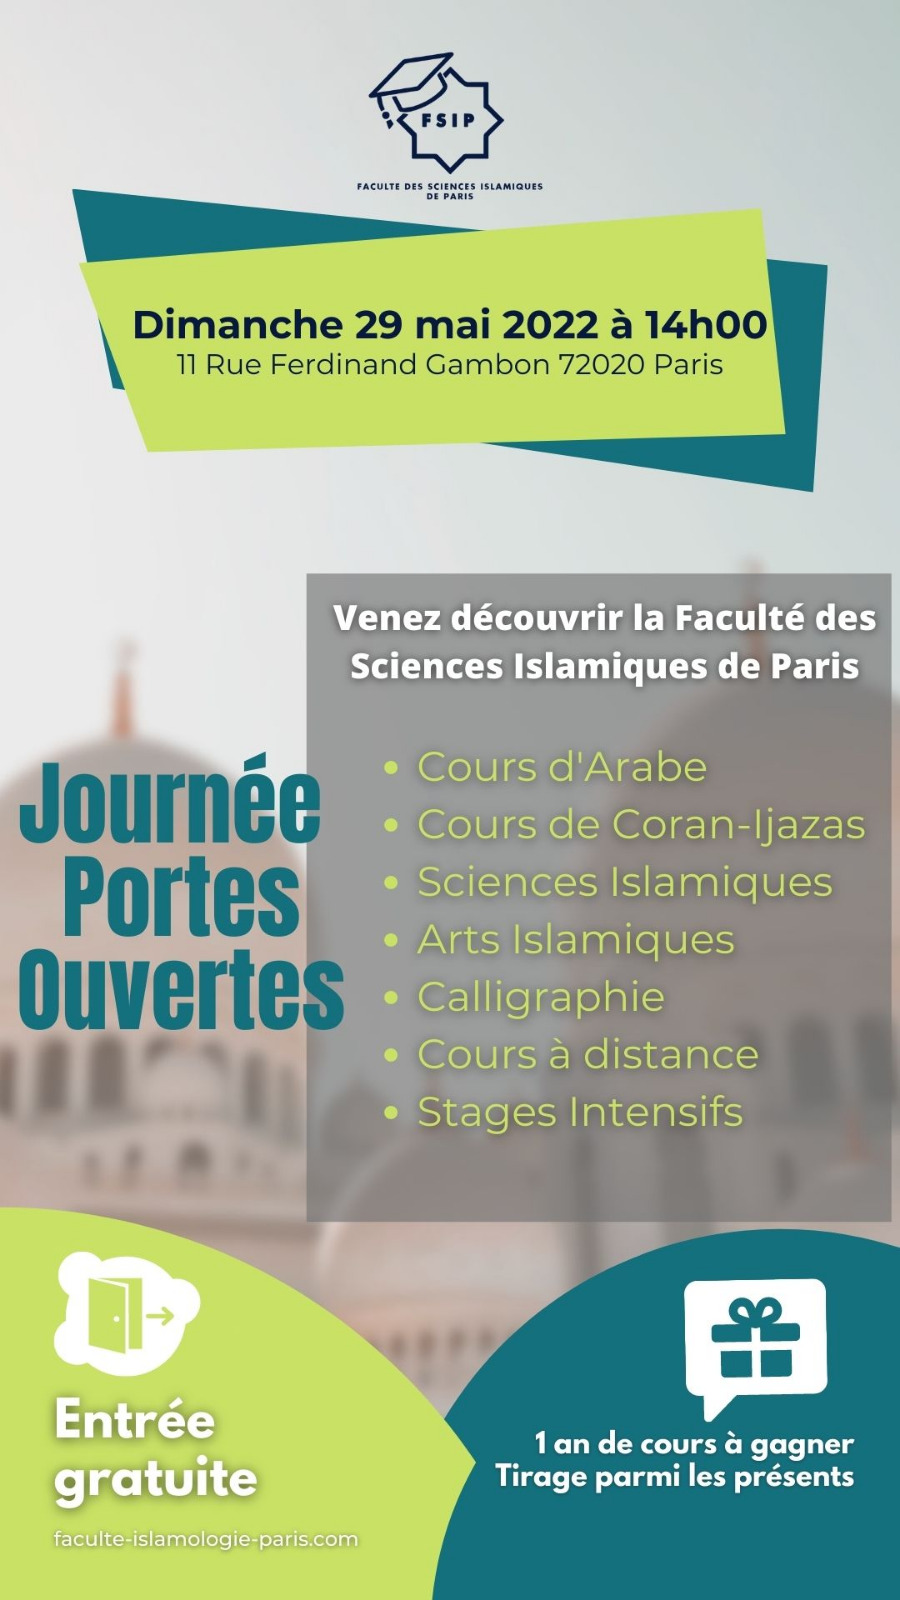 Faculte_islamique_Paris_FSIP-Journee_POrtes_Ouvertes Cours apprendre école_Arabe_Calligraphie_Coran_islam fiqh aqida tjwid Religion